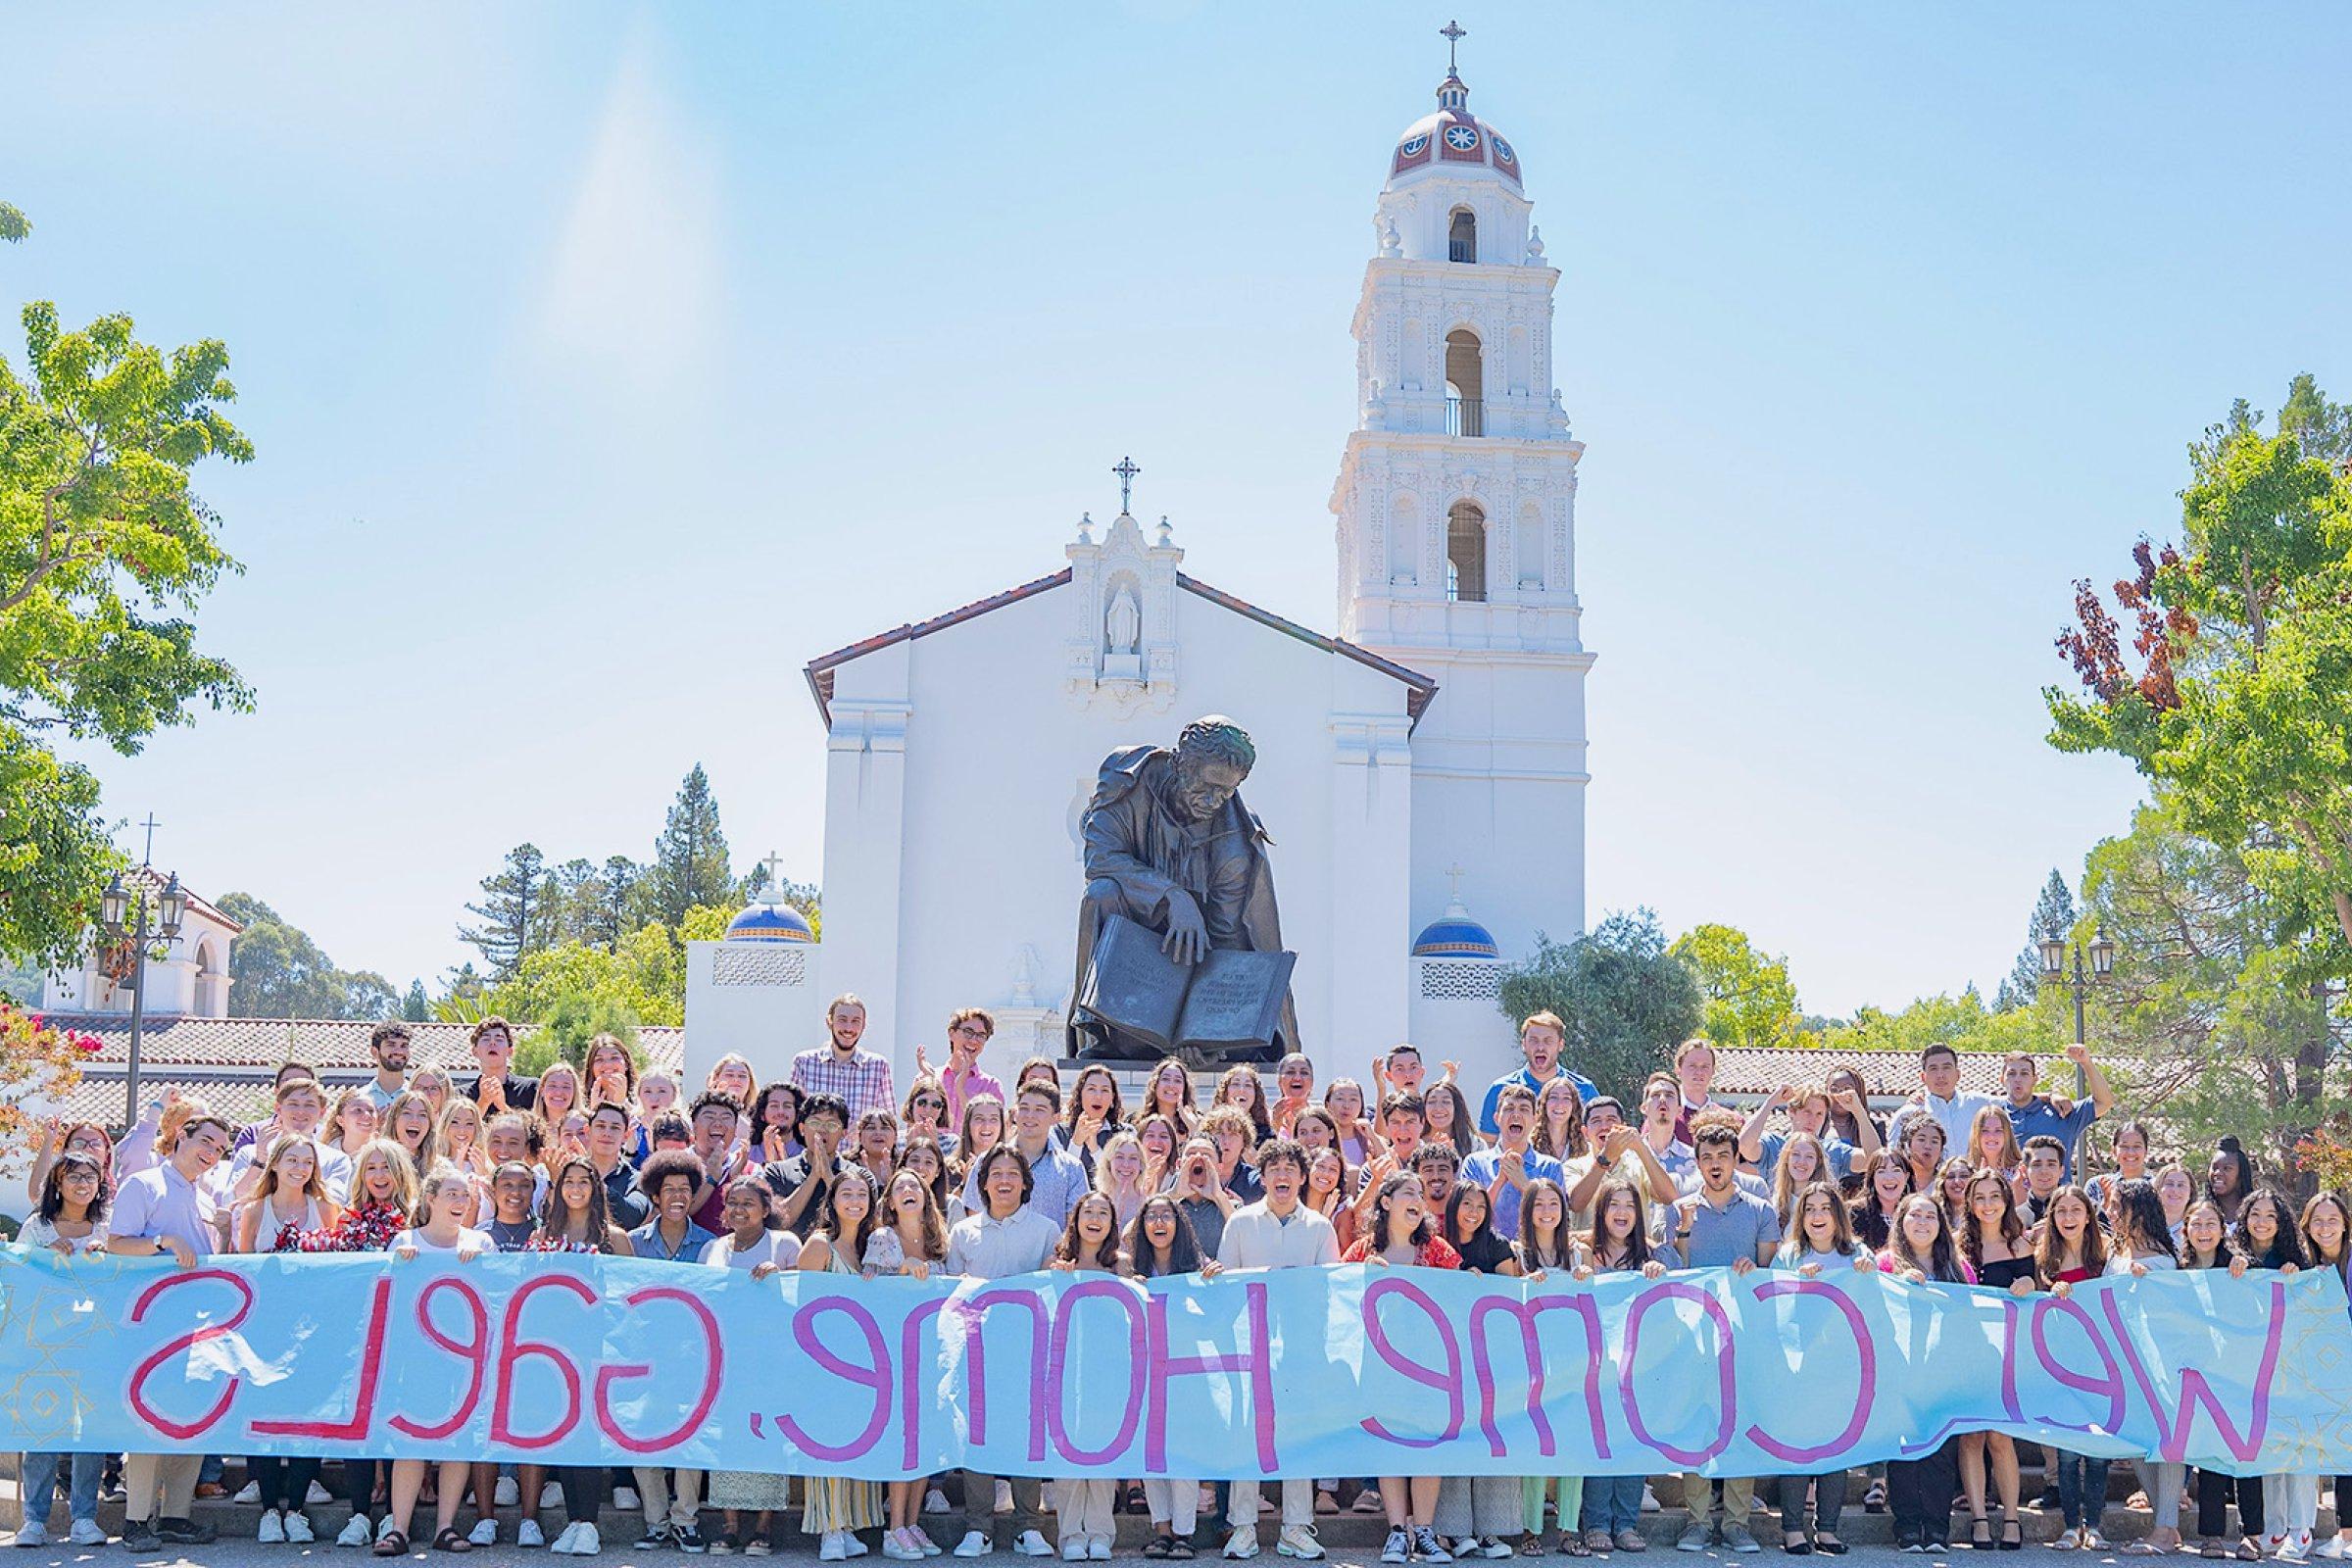 学生们在SMC教堂前举着“欢迎回家，盖尔人”的牌子